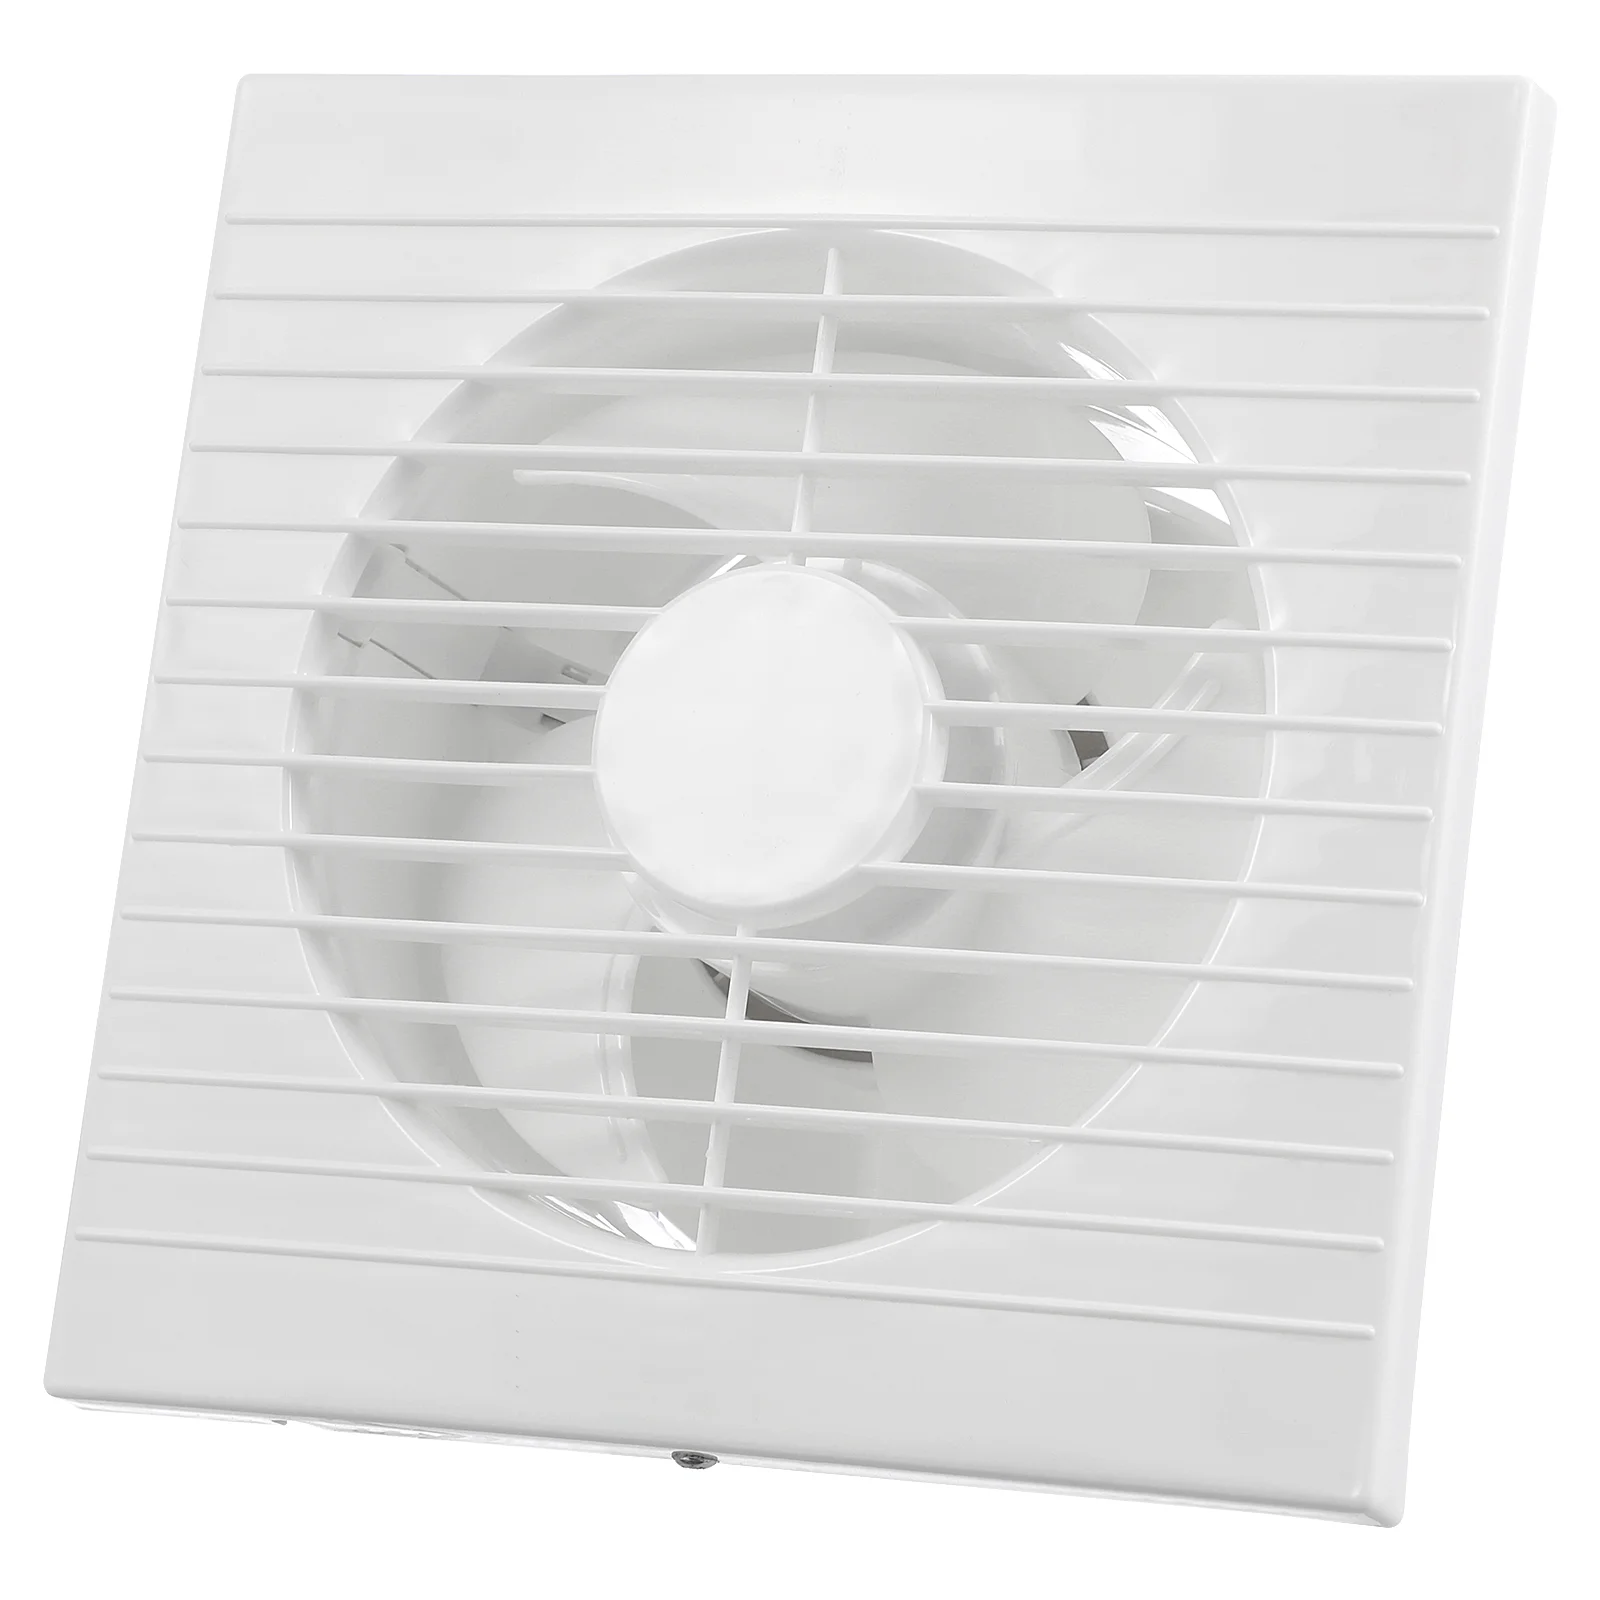 Настенный вытяжной вентилятор 110 В, вытяжной вентилятор для ванной, кухни, туалета, вентиляции, окна, настенный вытяжной вентилятор с вилкой Стандарта США